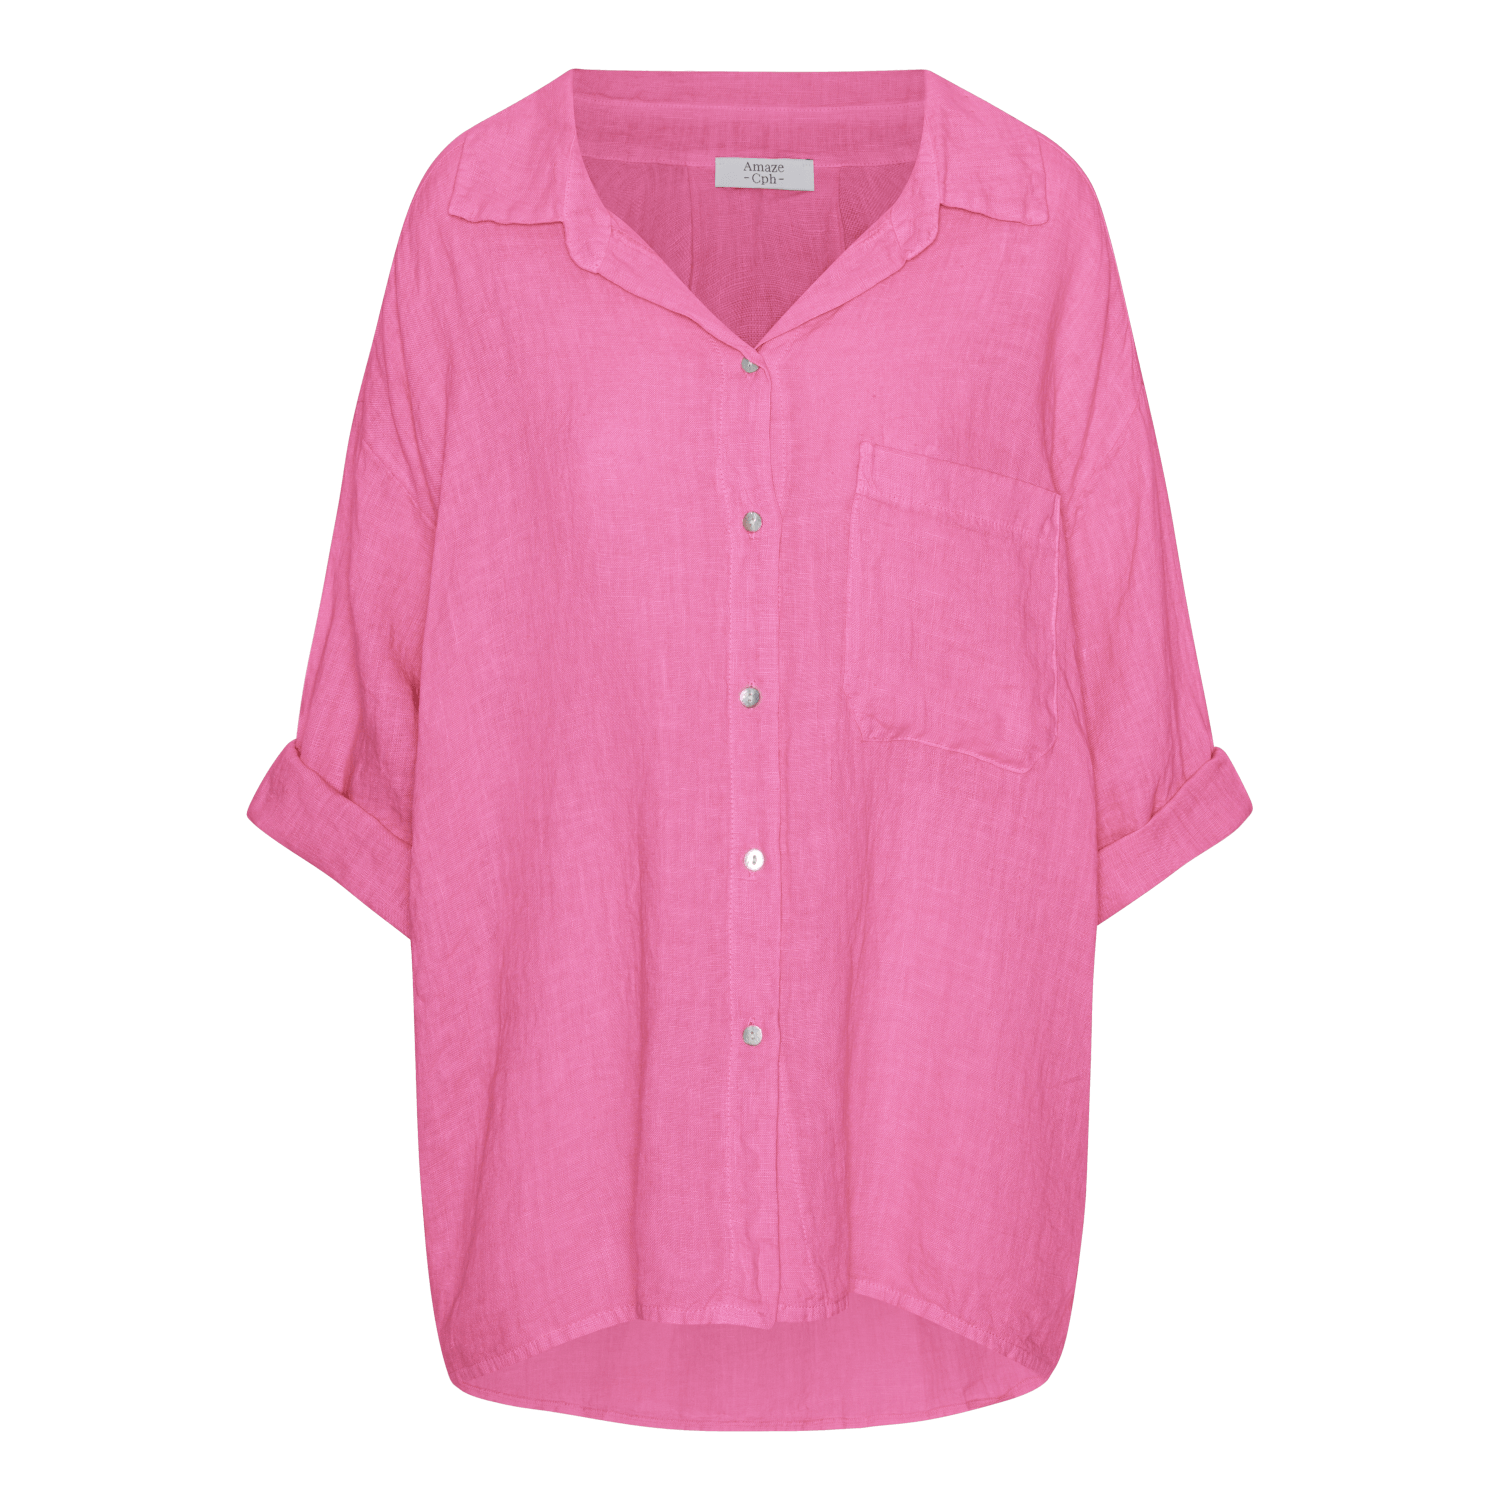 Oversized Linen Shirt - Pink - Amaze Cph - Pink - S/M